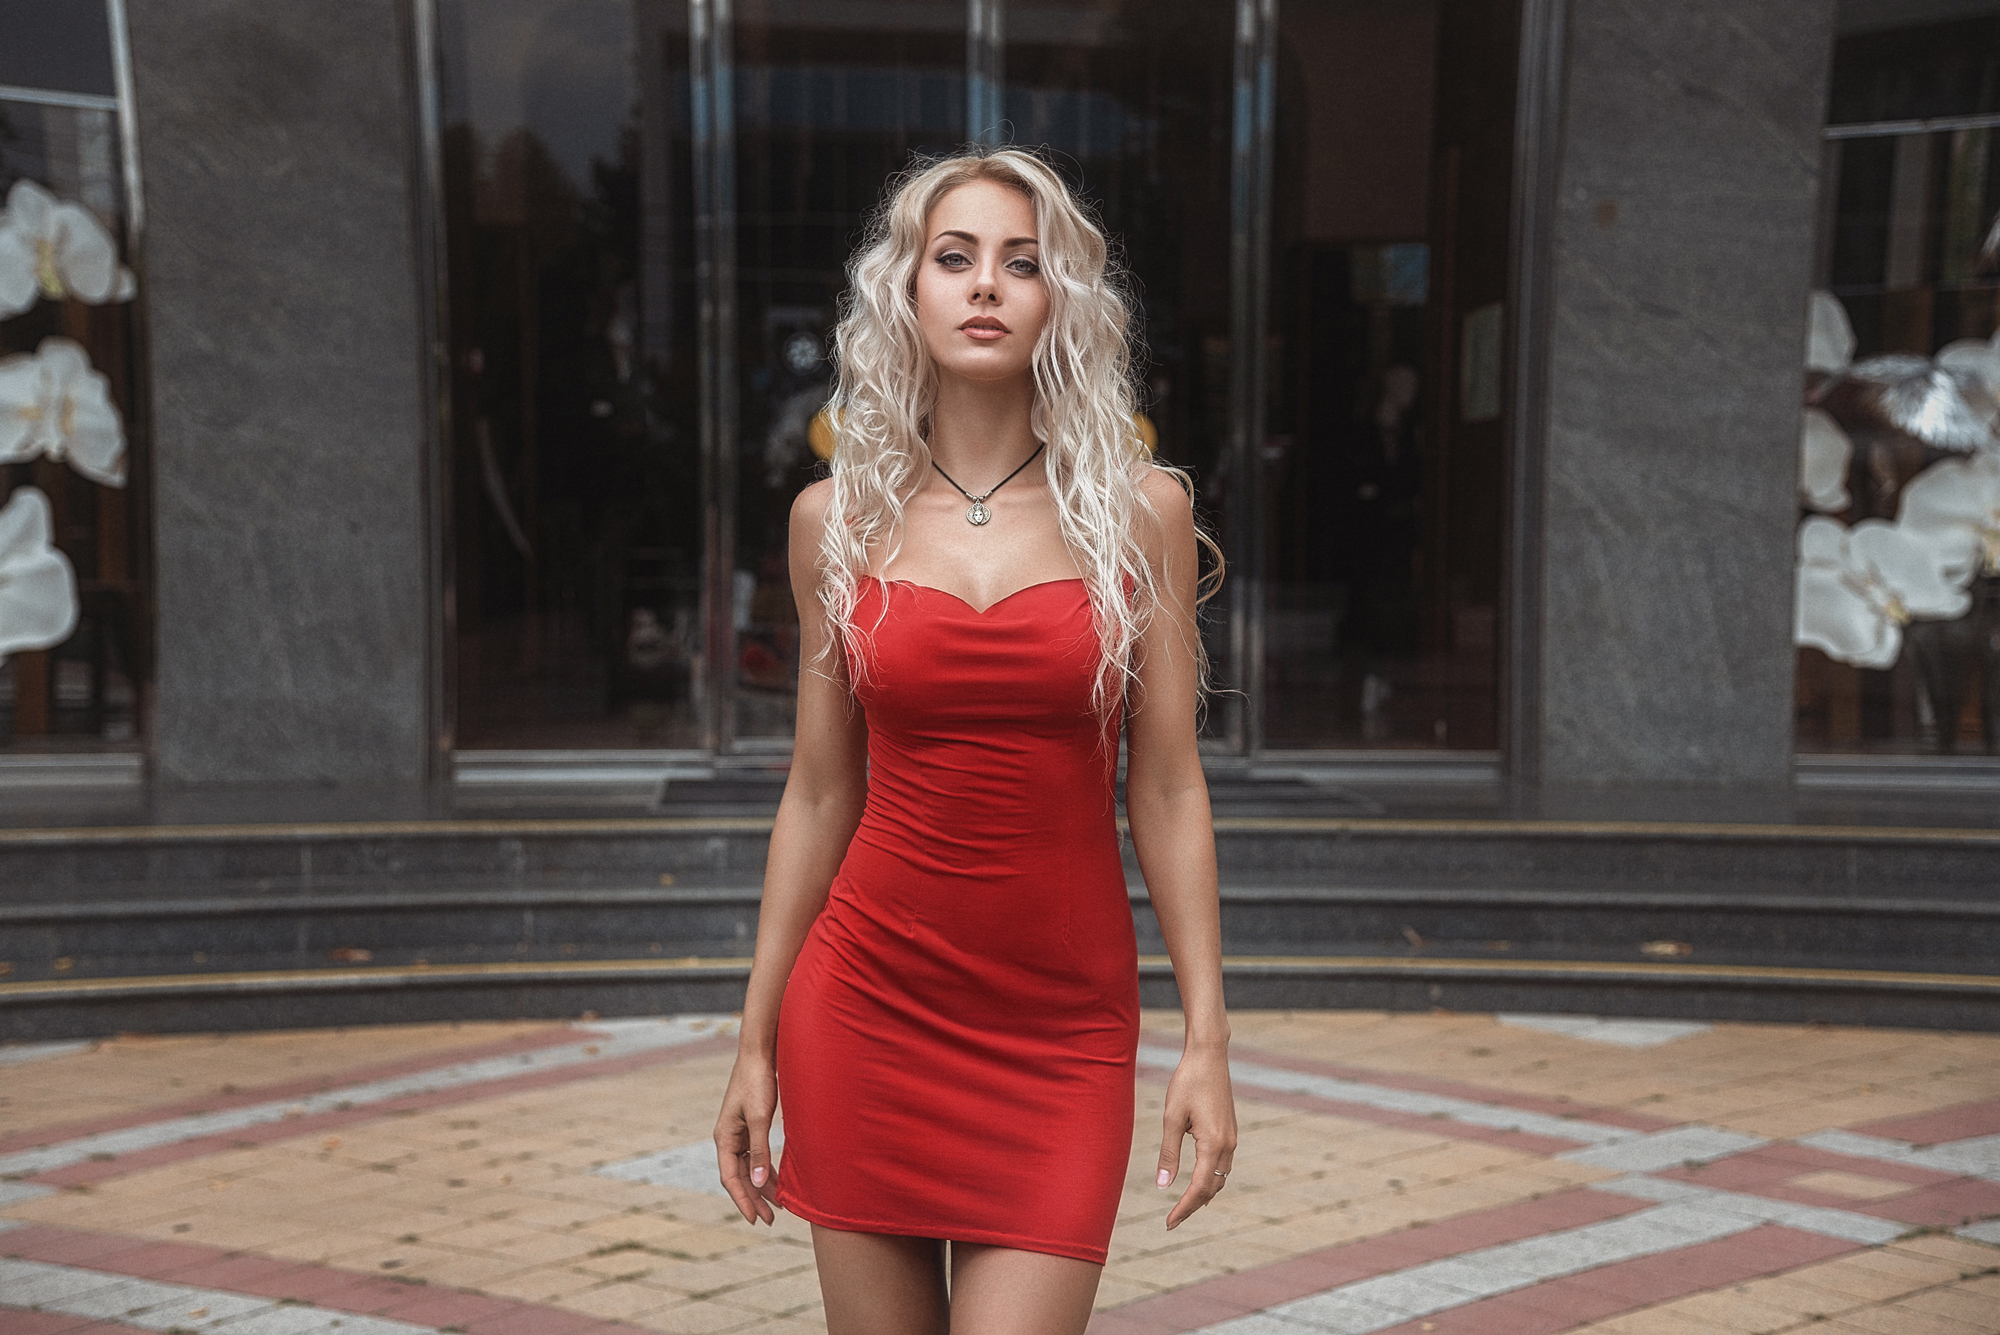 People 2000x1335 women blonde red dress tight dress portrait necklace women outdoors wavy hair Galyaev Evgeniy Anna Khachaturova